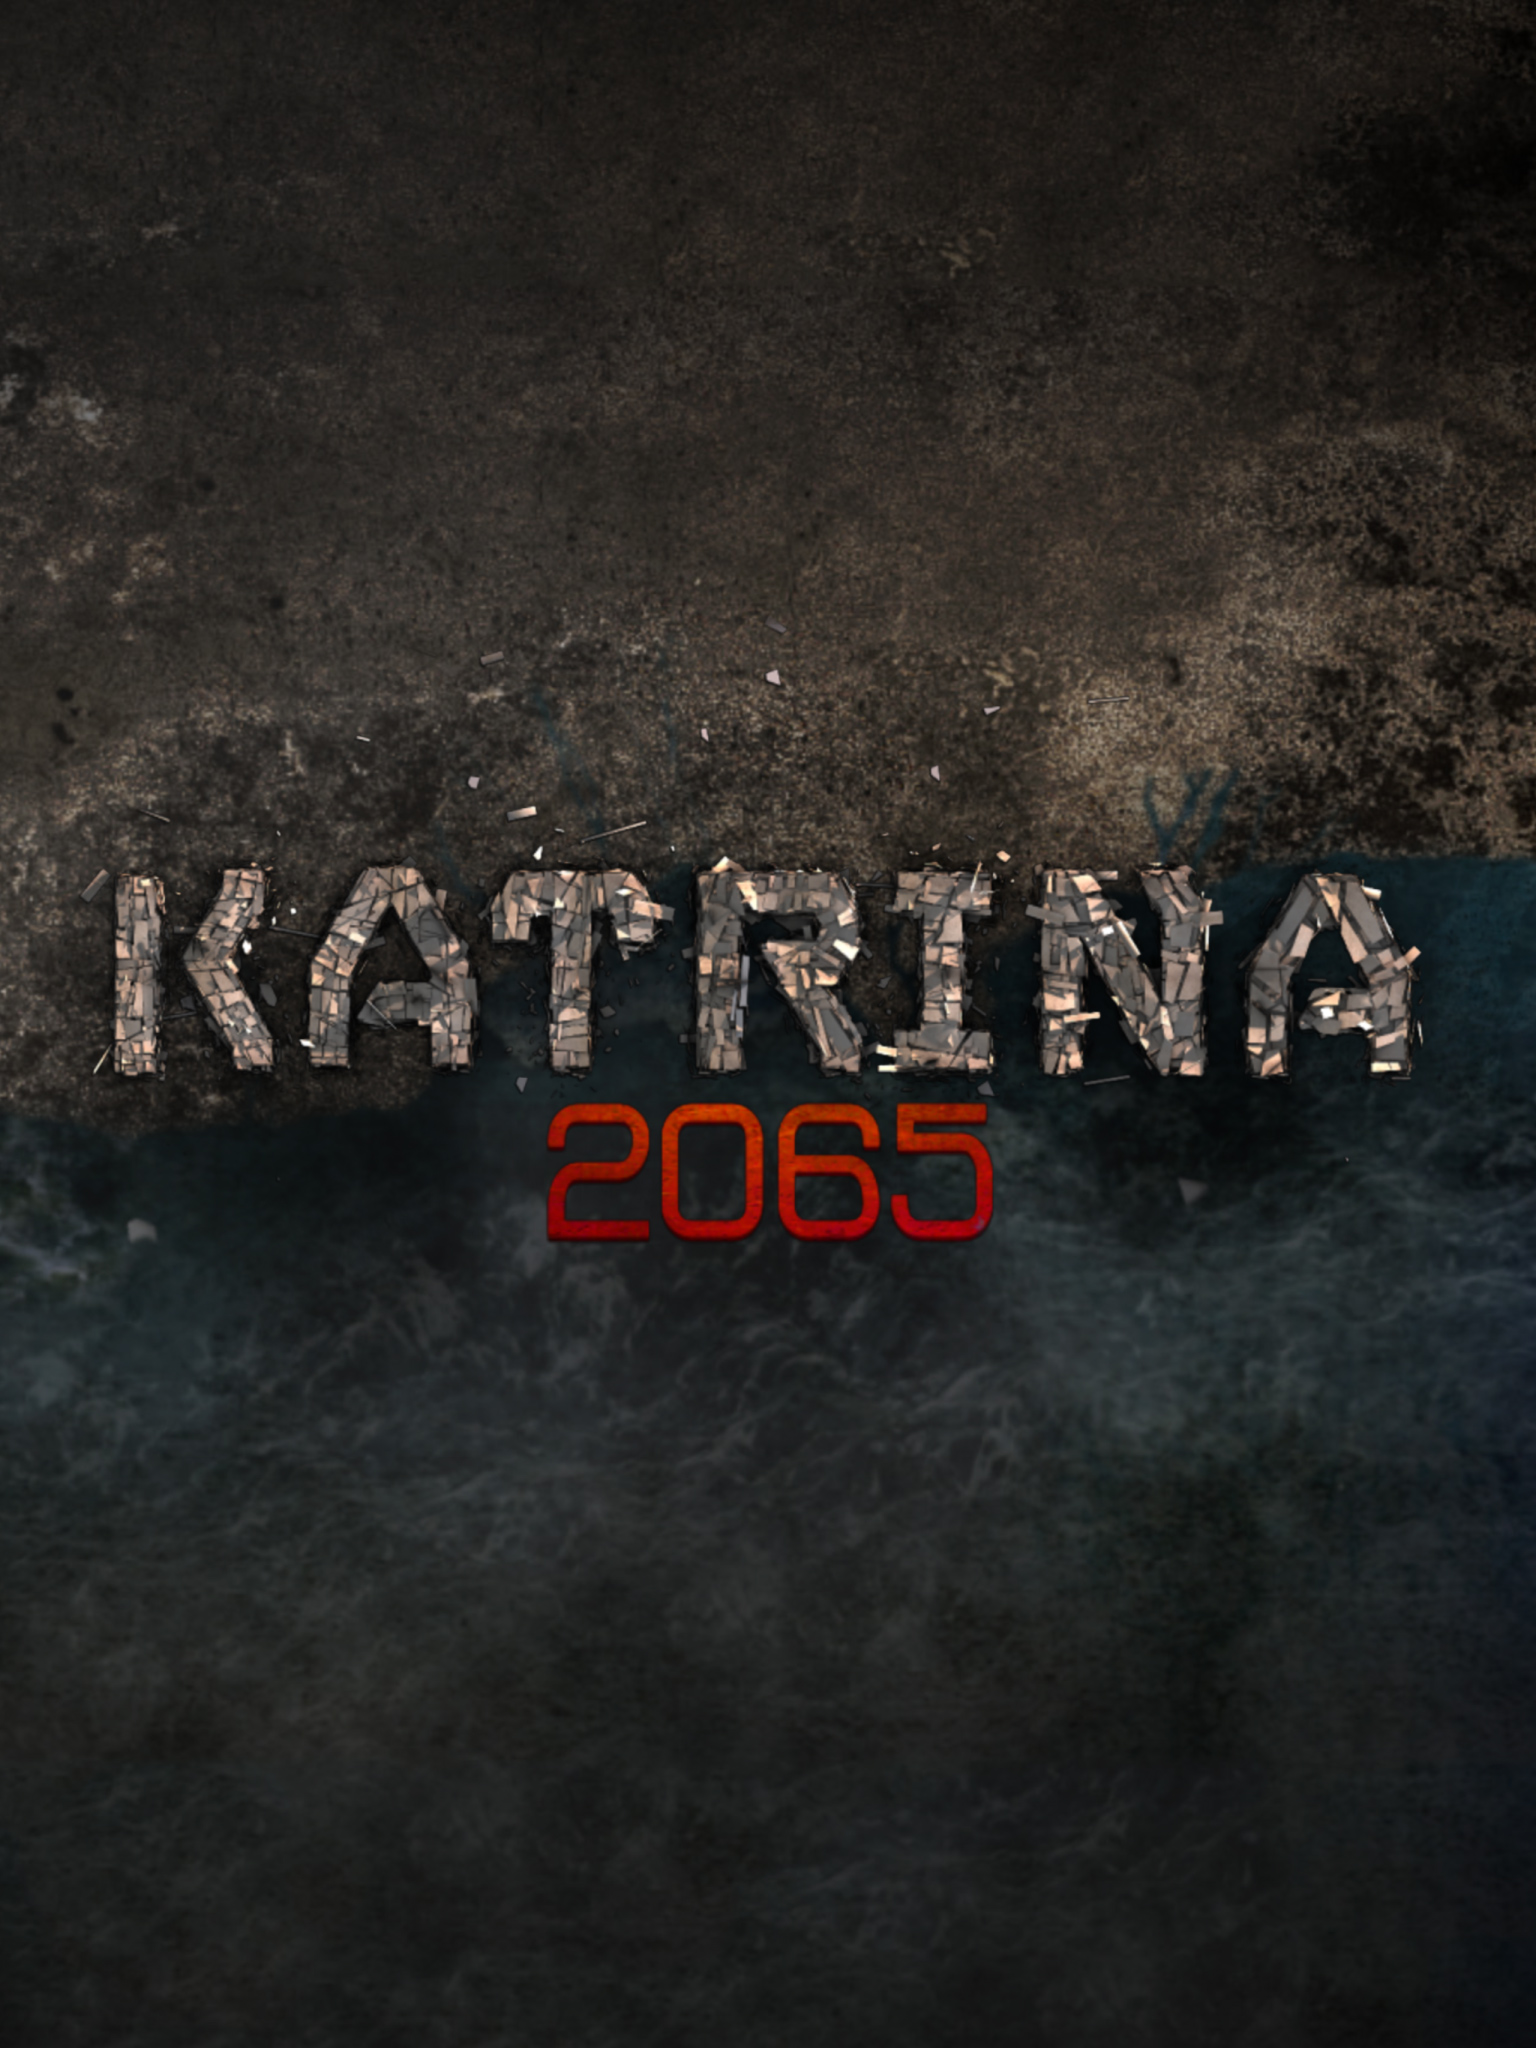 Katrina 2065